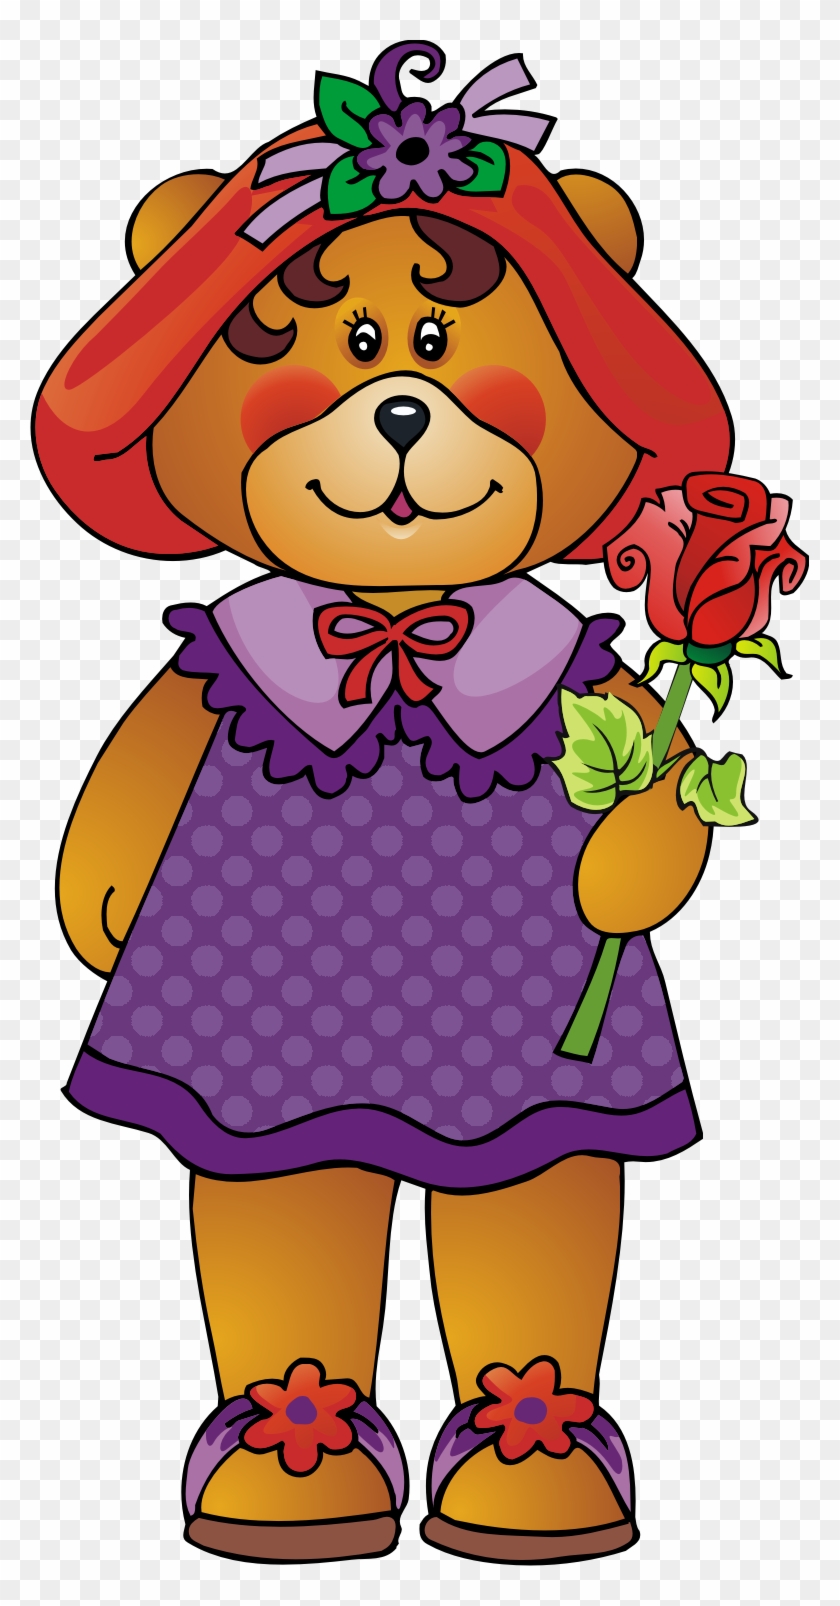 Red Hats, Bear Clipart, Teddy Bears, Friendship, Clip - Cartoon #288063